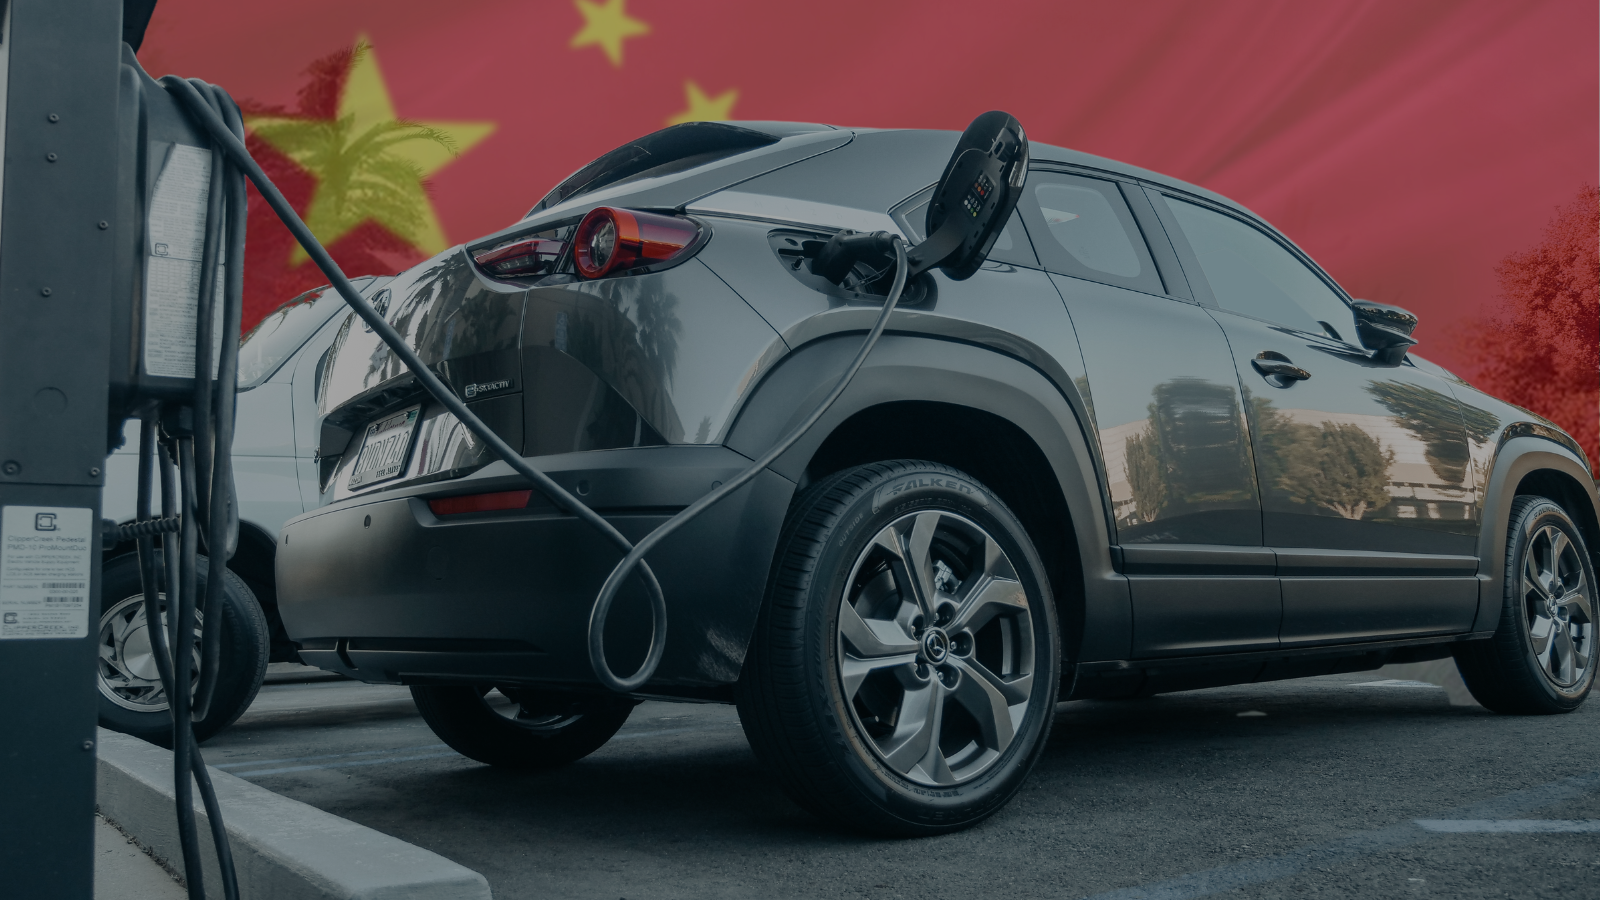 Európa uvalila clá na čínske e-autá. Je však v tejto hre víťazom?